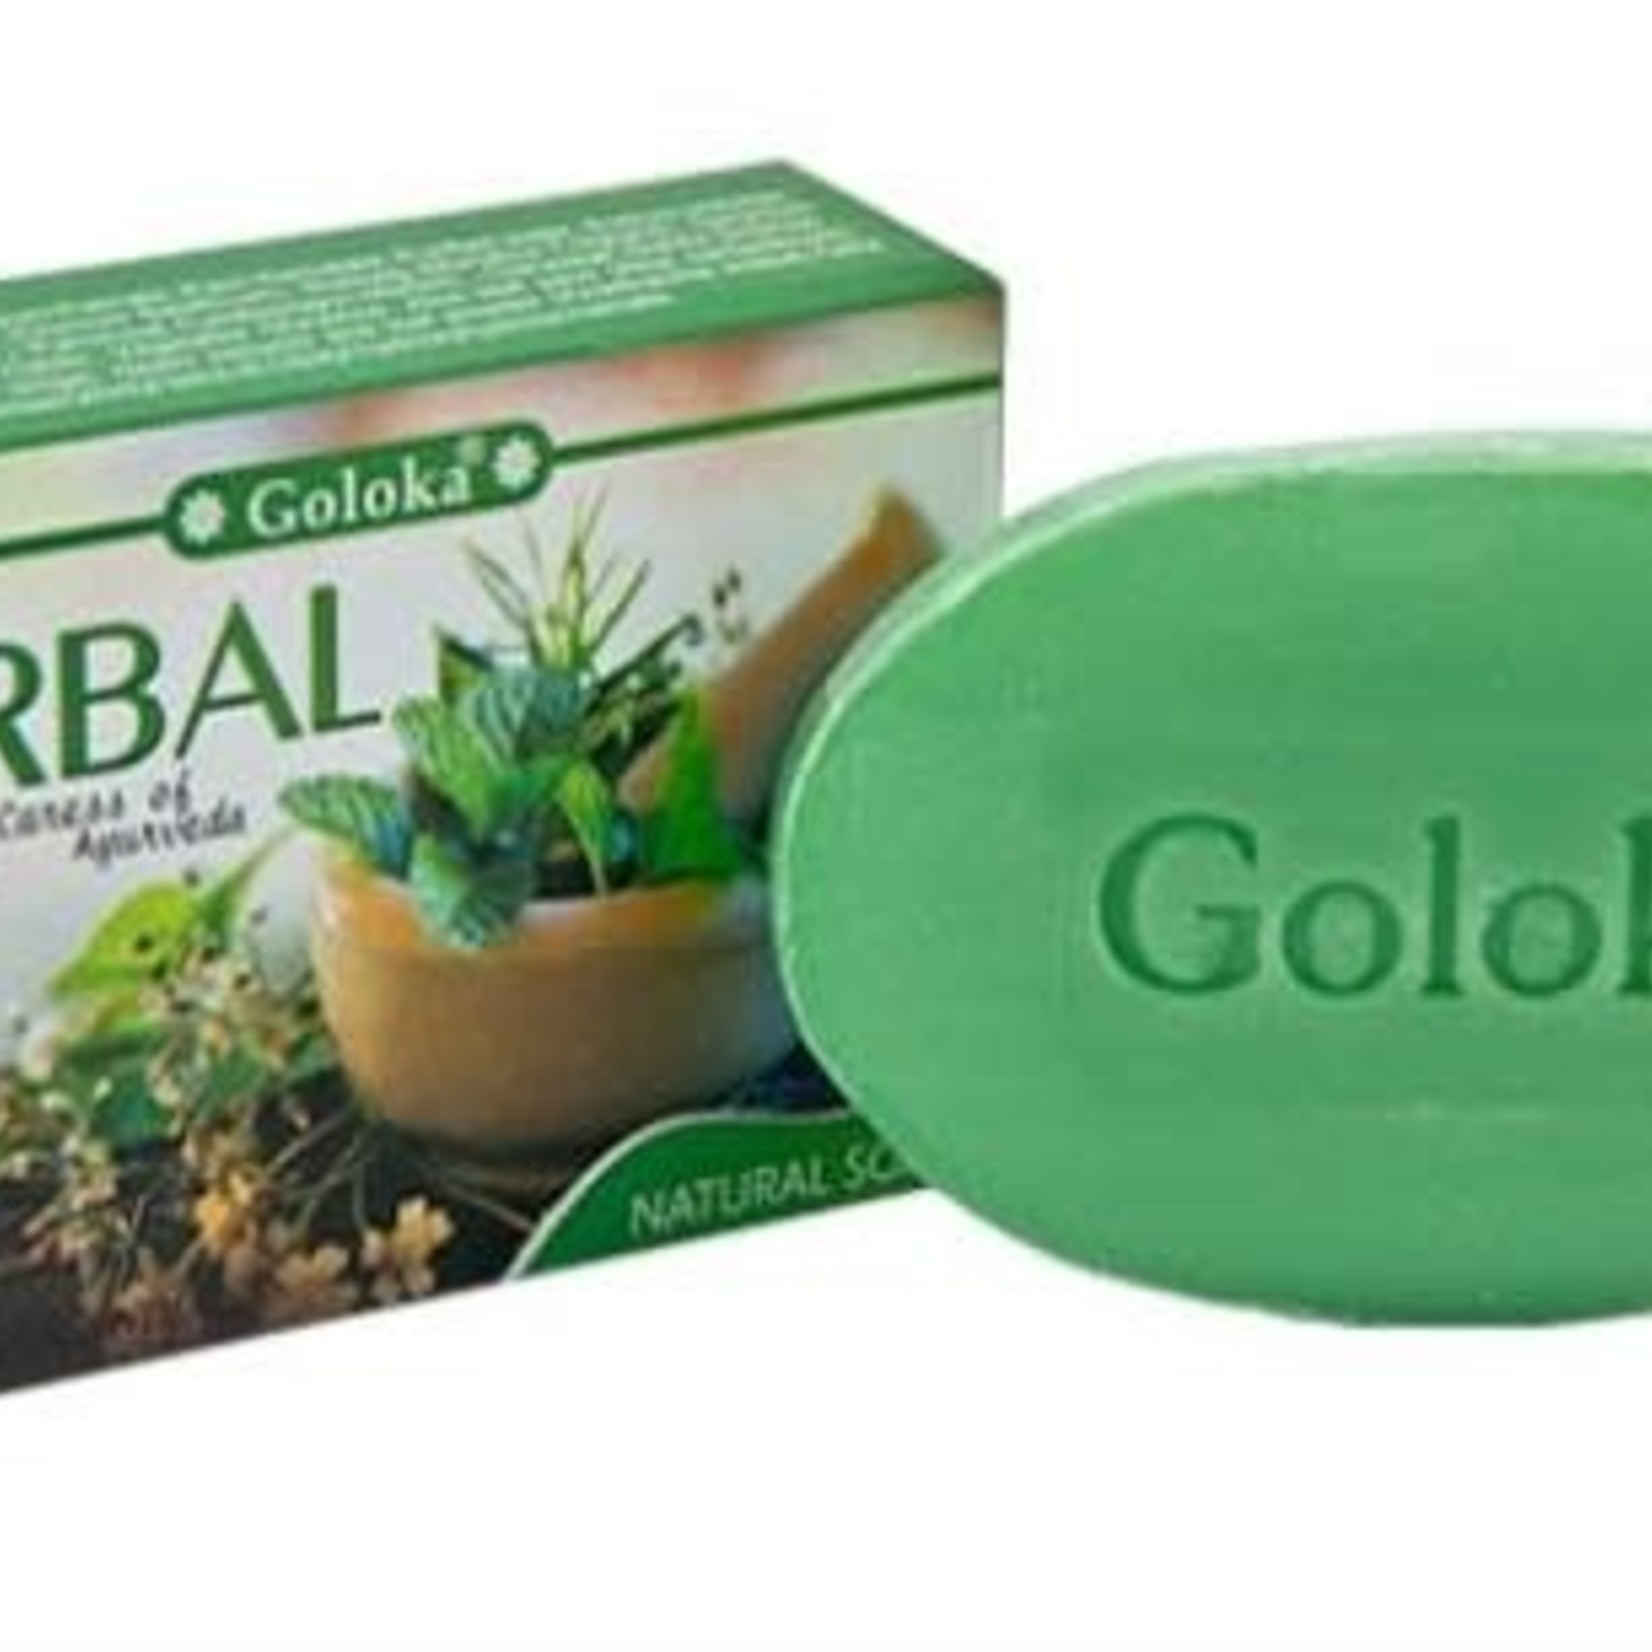 Natural Herbal Soap (Goloka)